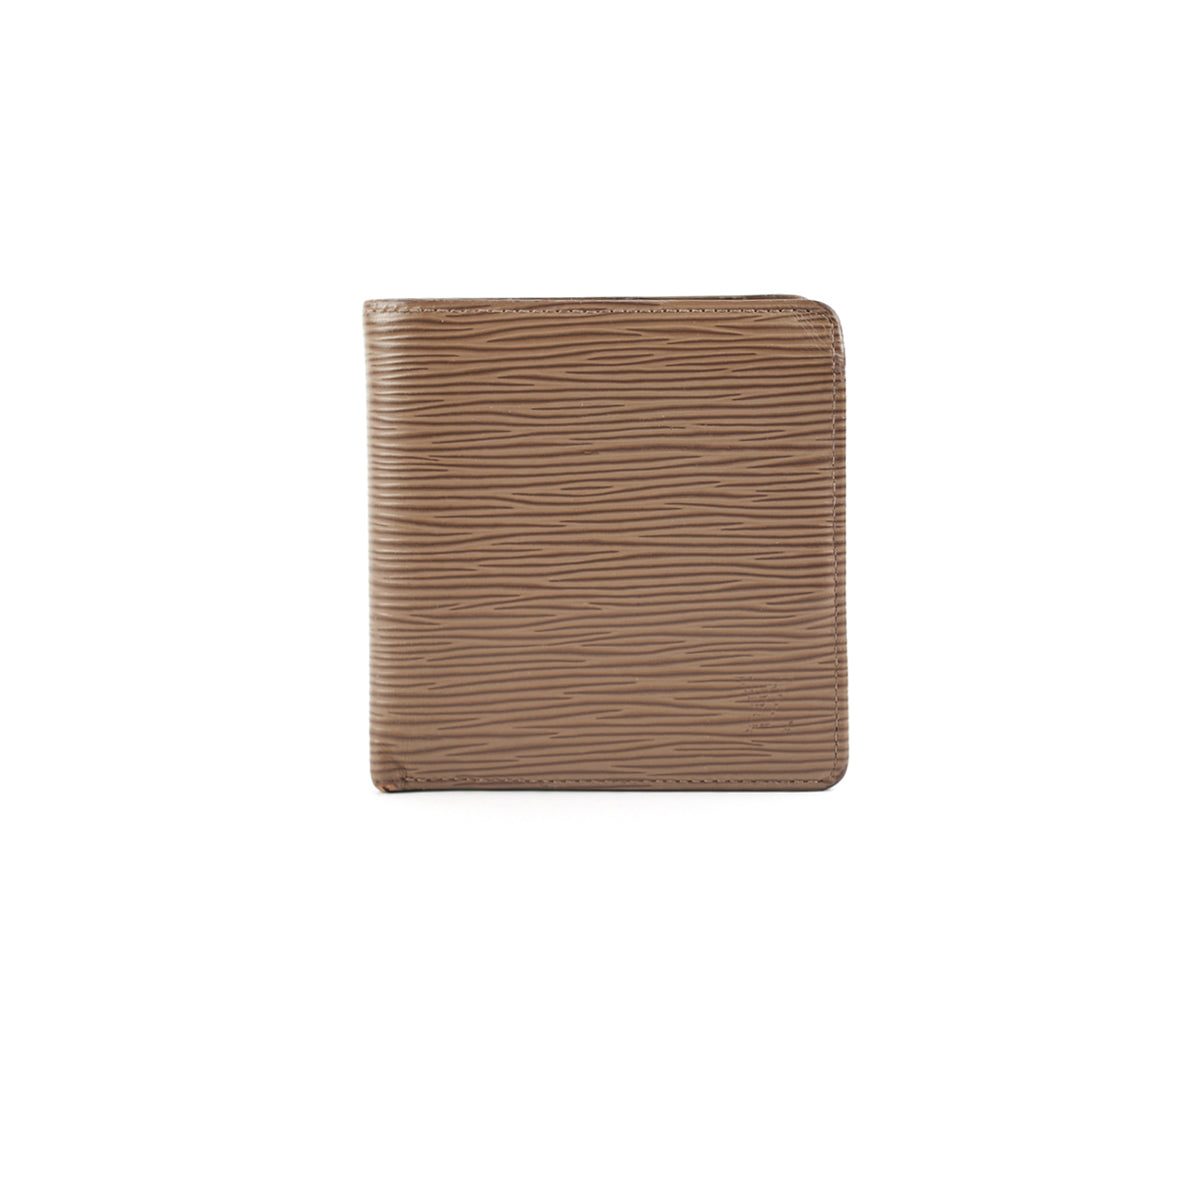 Shop Louis Vuitton MARCO Marco wallet (M62289) by design◇base